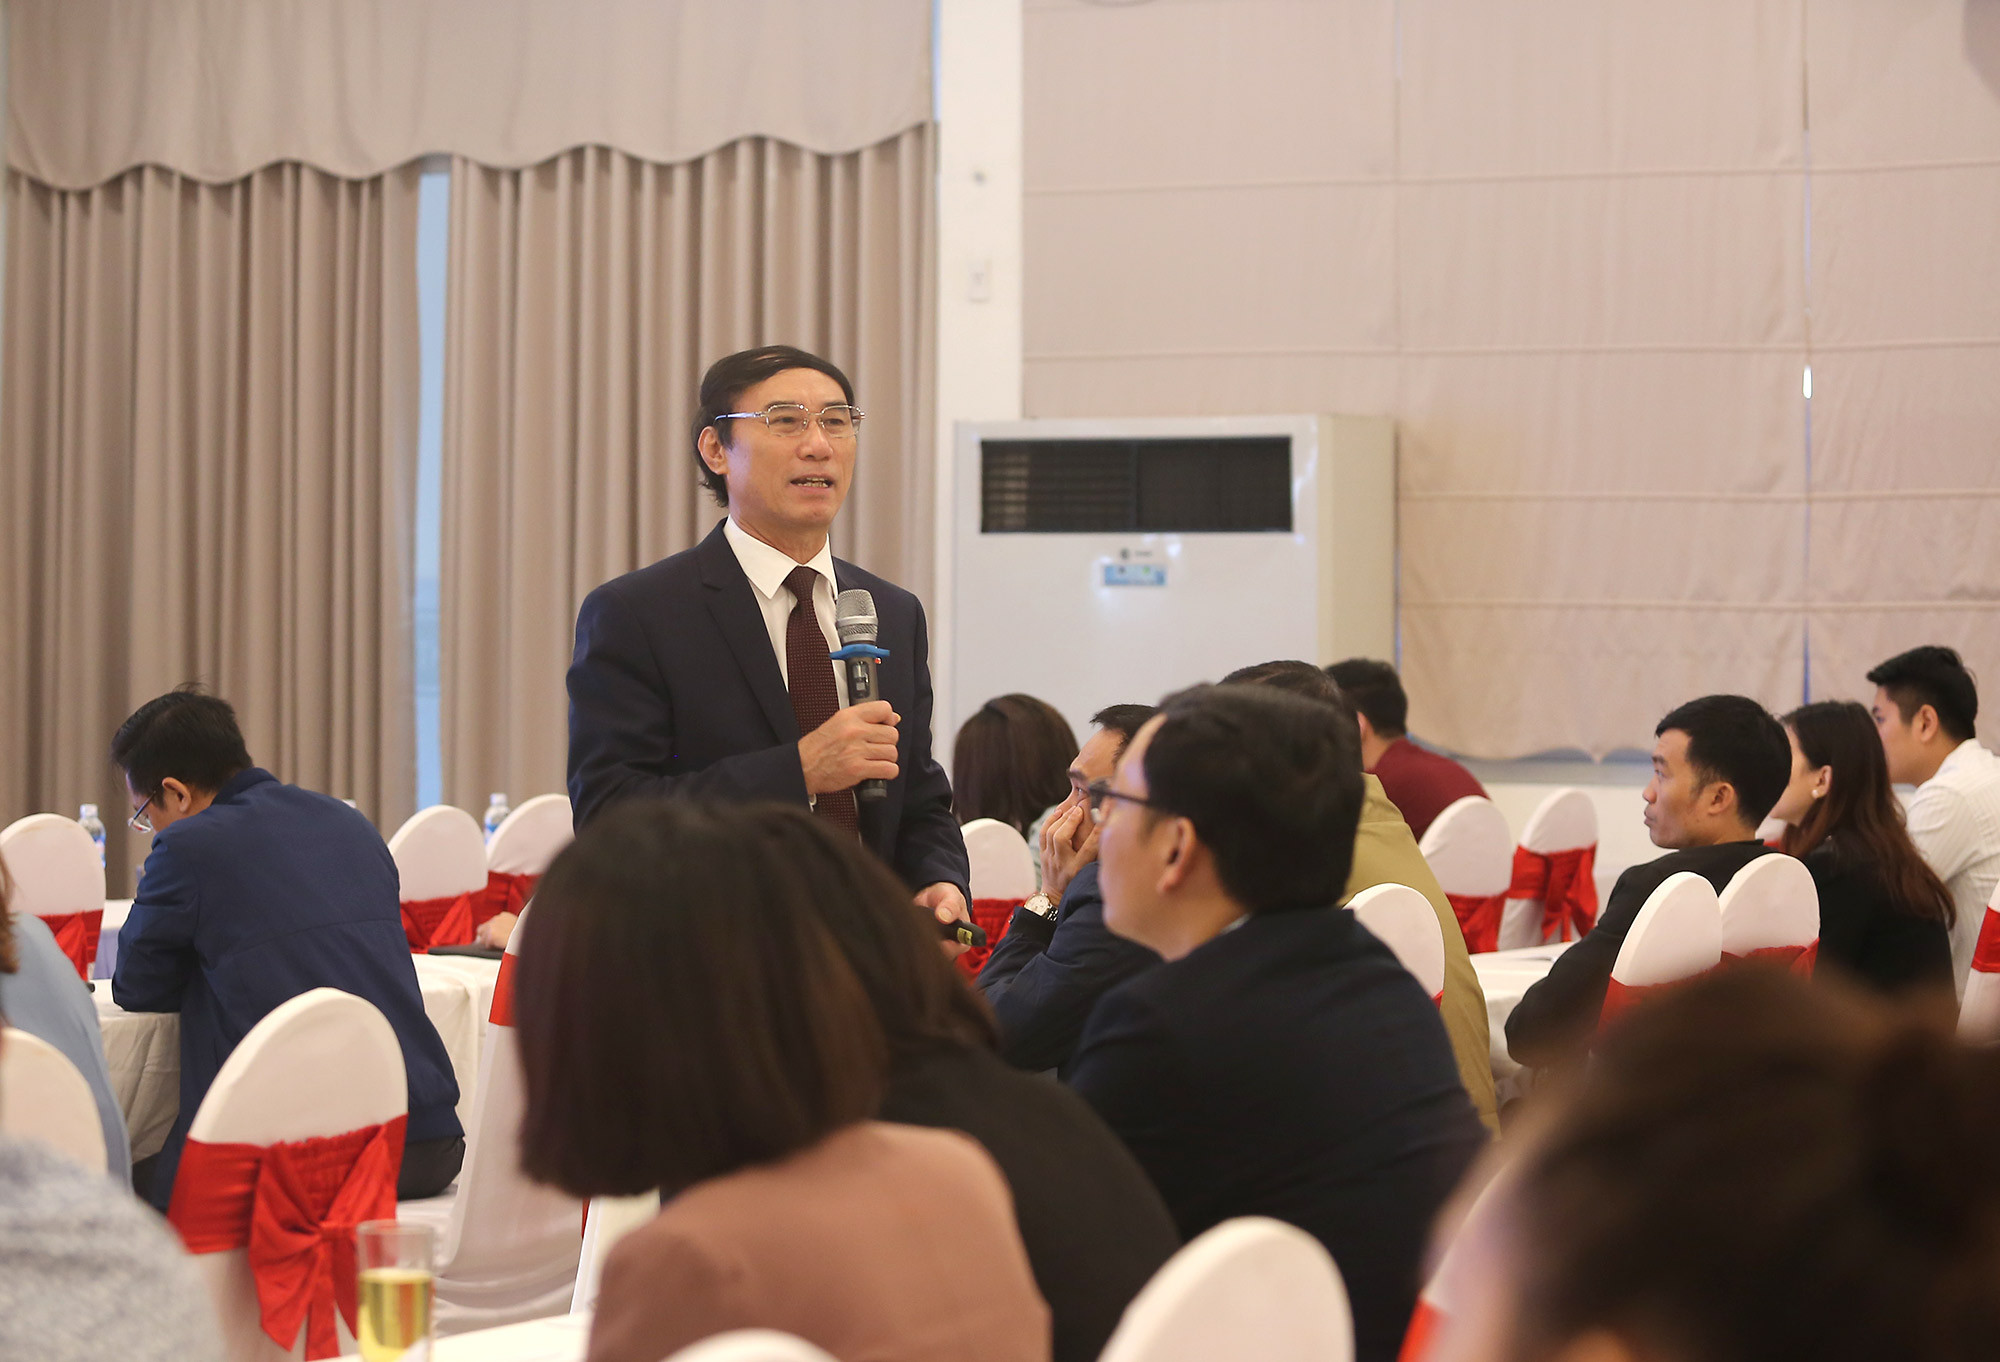 Ông Nguyễn Văn Phùng - Vụ quản lý Thuế doanh nghiệp lớn, Tổng cục Thuế - Bộ Tài Chính giới thiệu về các vấn đề thuế trong doanh nghiệp. Ảnh: Lâm Tùng